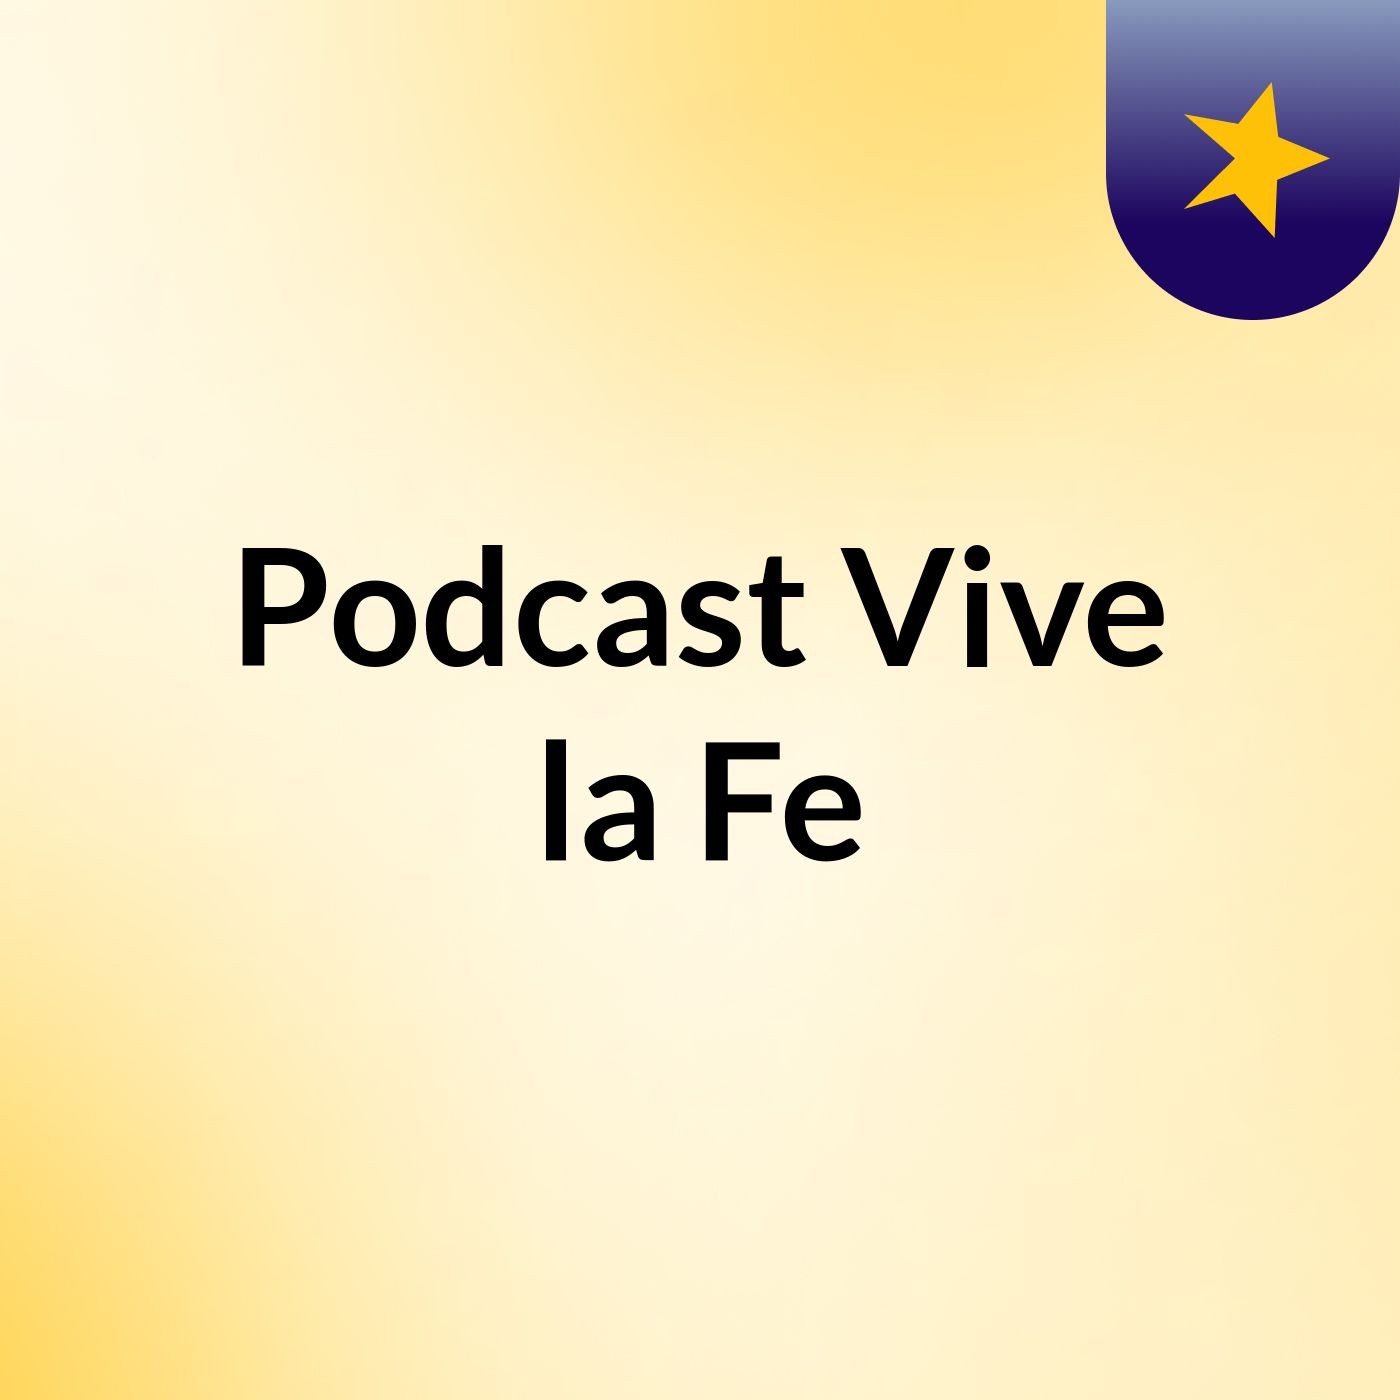 Podcast Vive la Fe